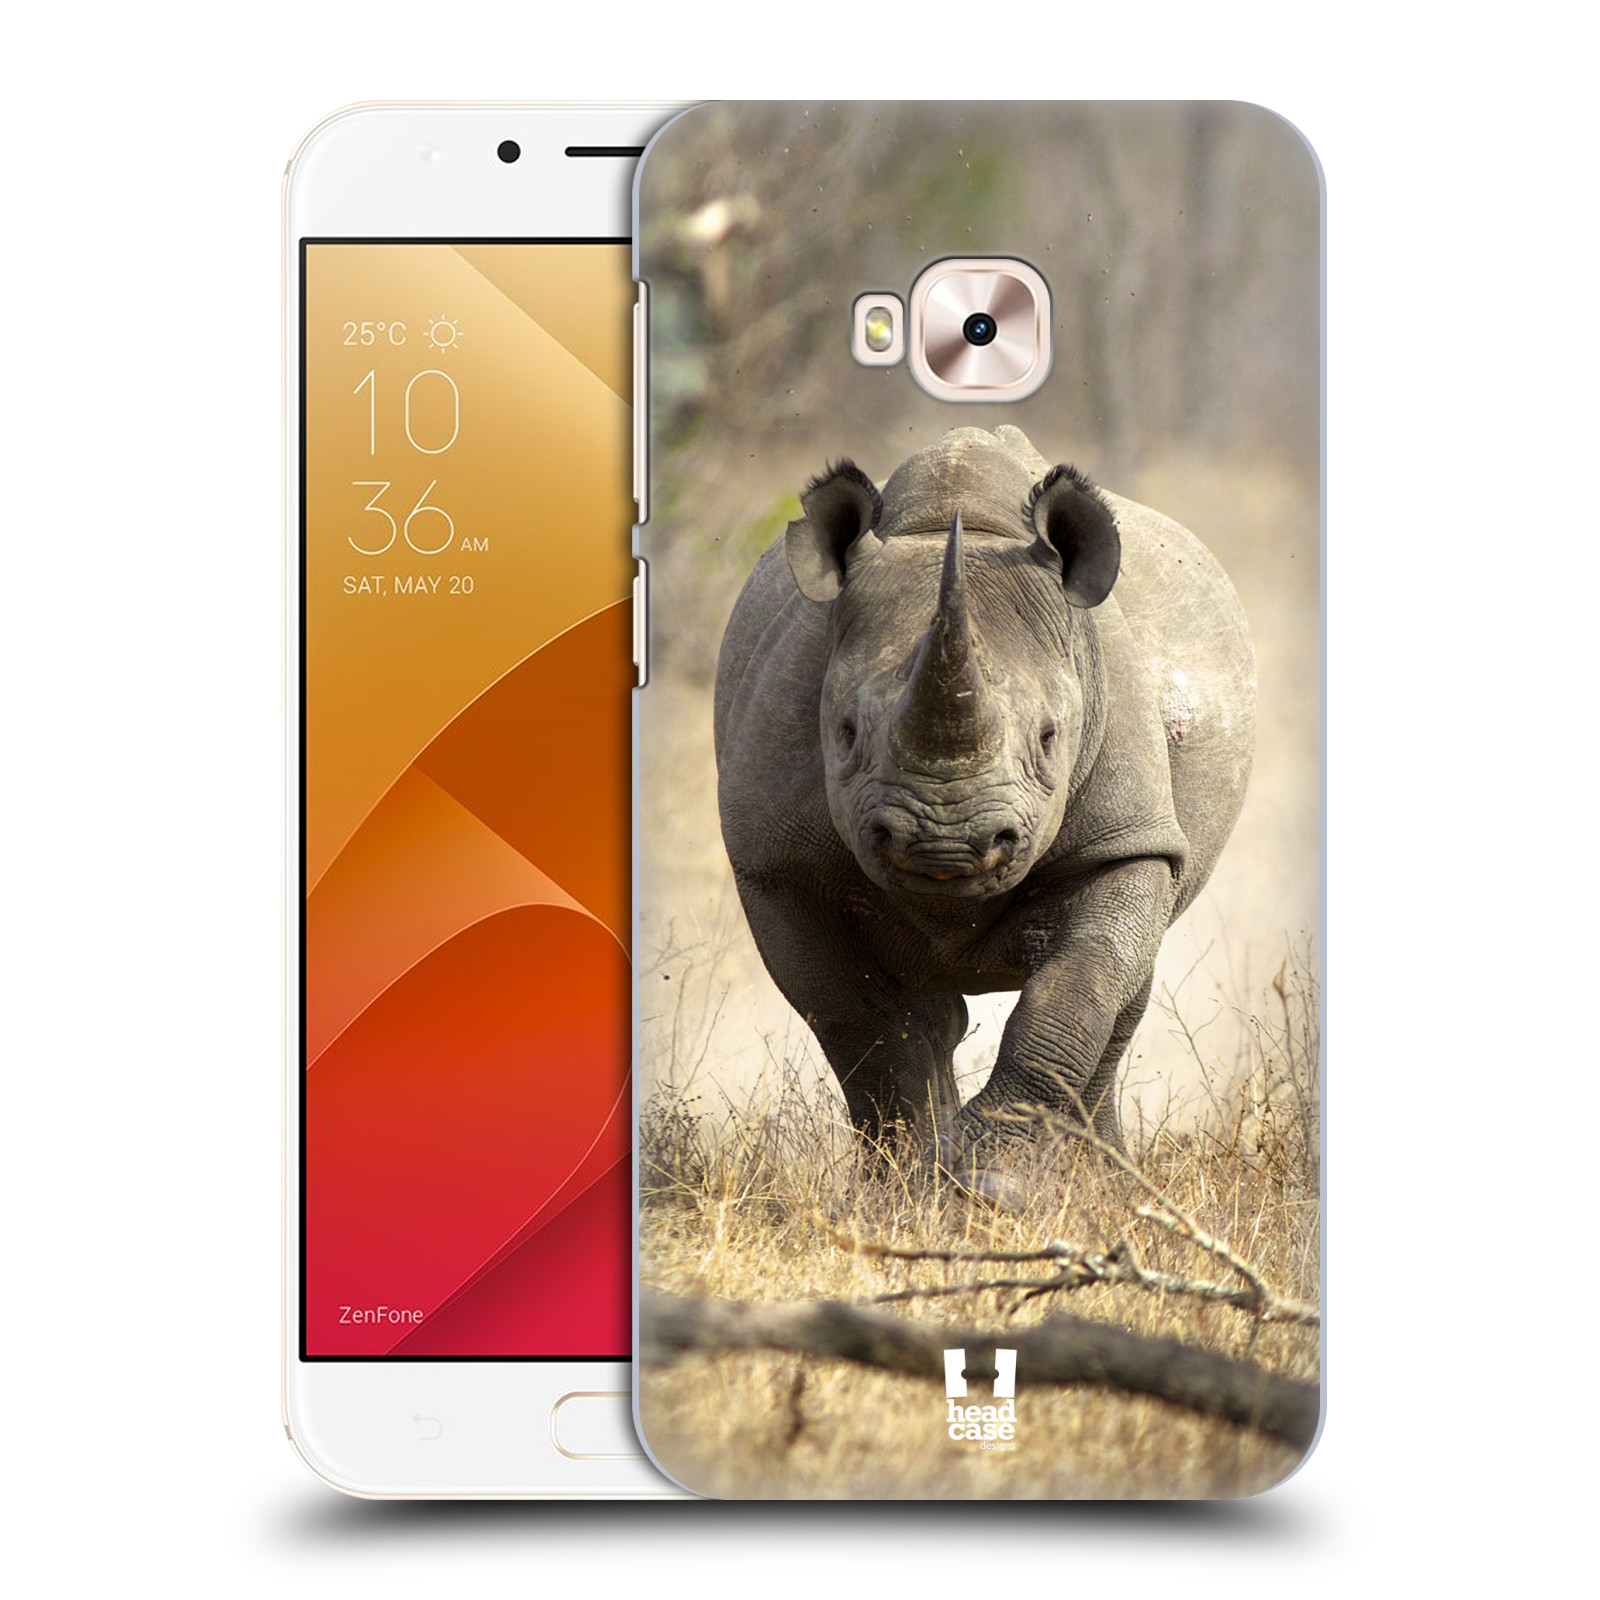 HEAD CASE plastový obal na mobil Asus Zenfone 4 Selfie Pro ZD552KL vzor Divočina, Divoký život a zvířata foto AFRIKA BĚŽÍCÍ NOSOROŽEC